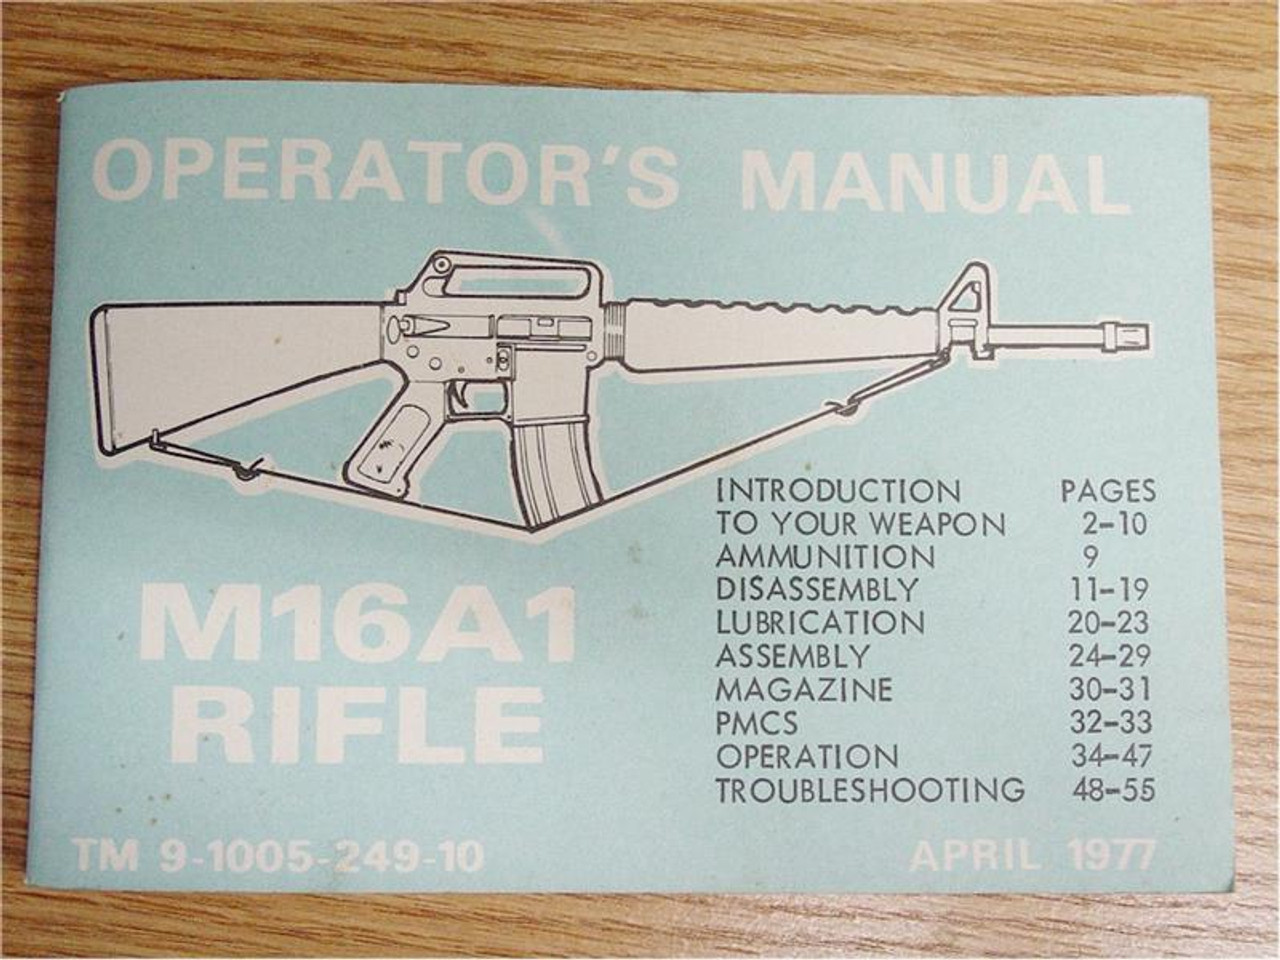 Operators Manual M16a1 Rifletm9 1005 249 10 Sb001 Sarco Inc 6980